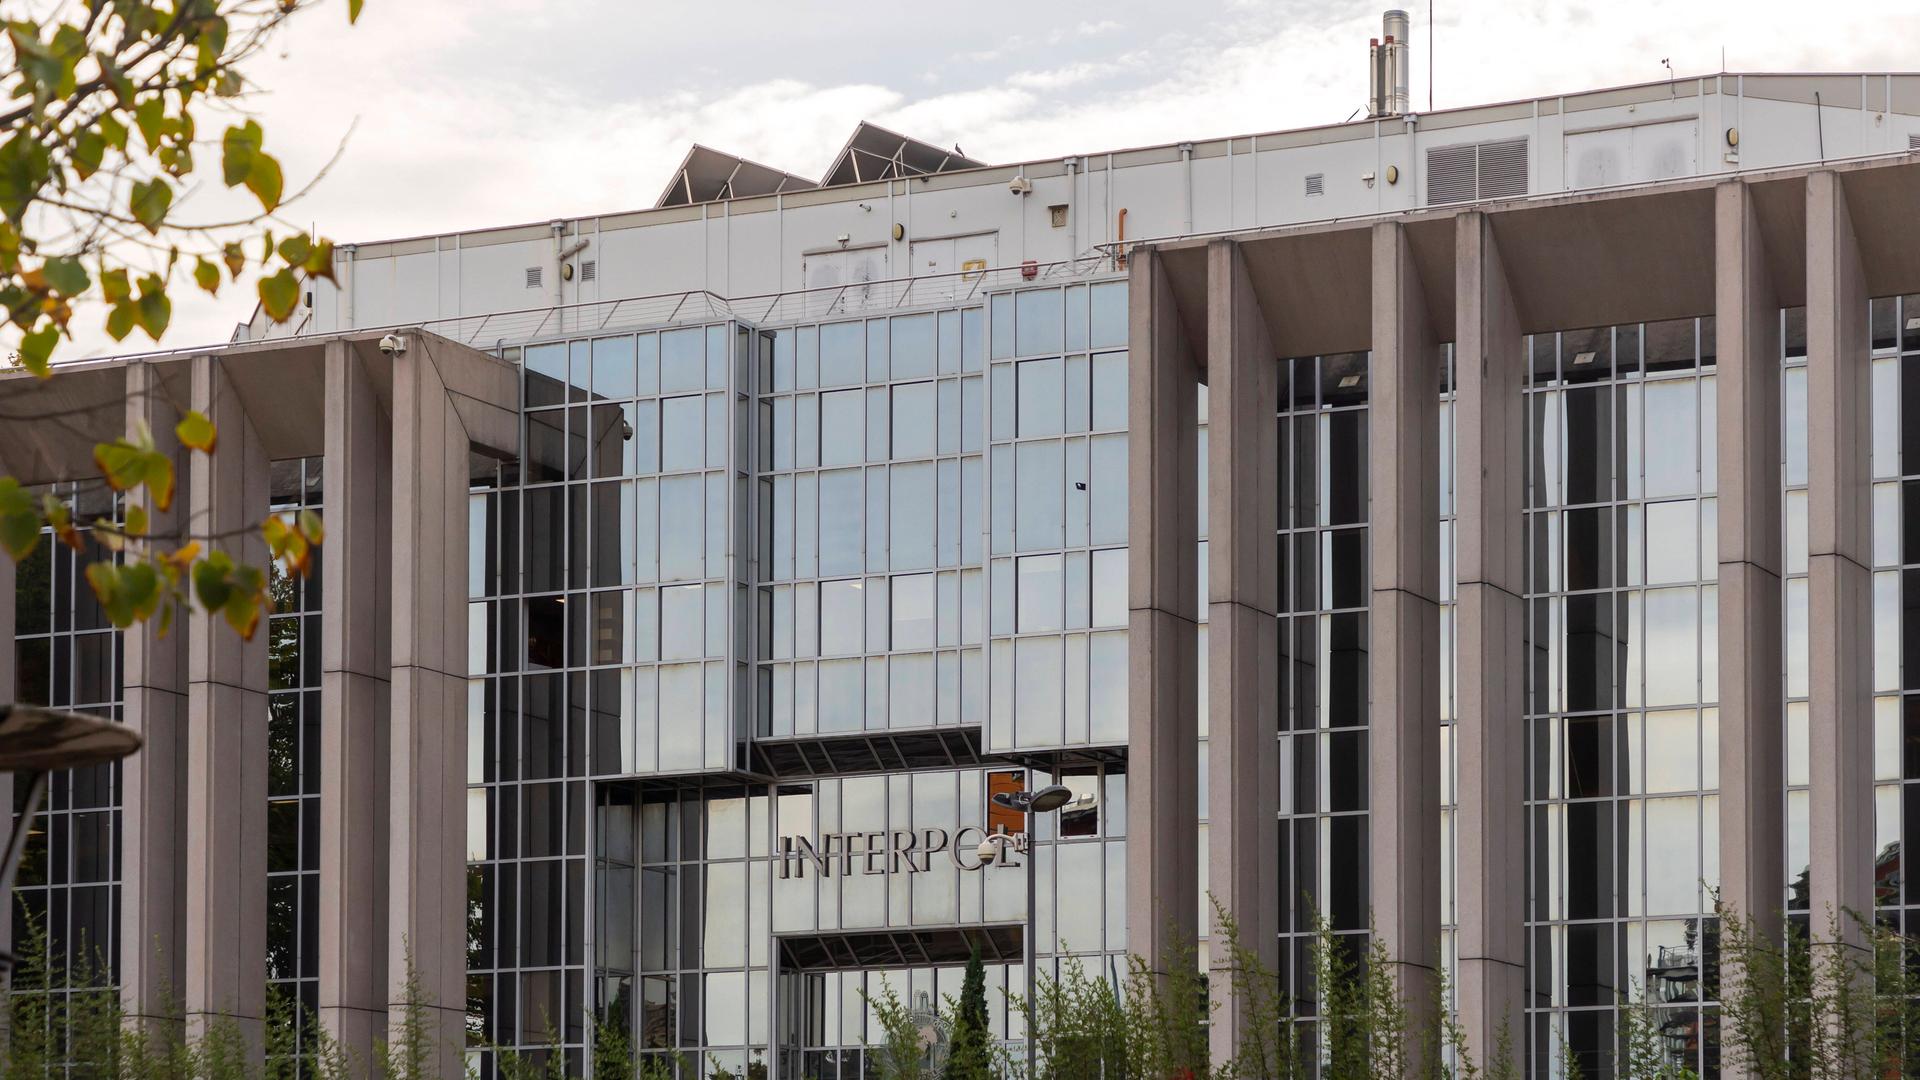 Blick auf das Bürogebäude der Zentrale von Interpol in Lyon